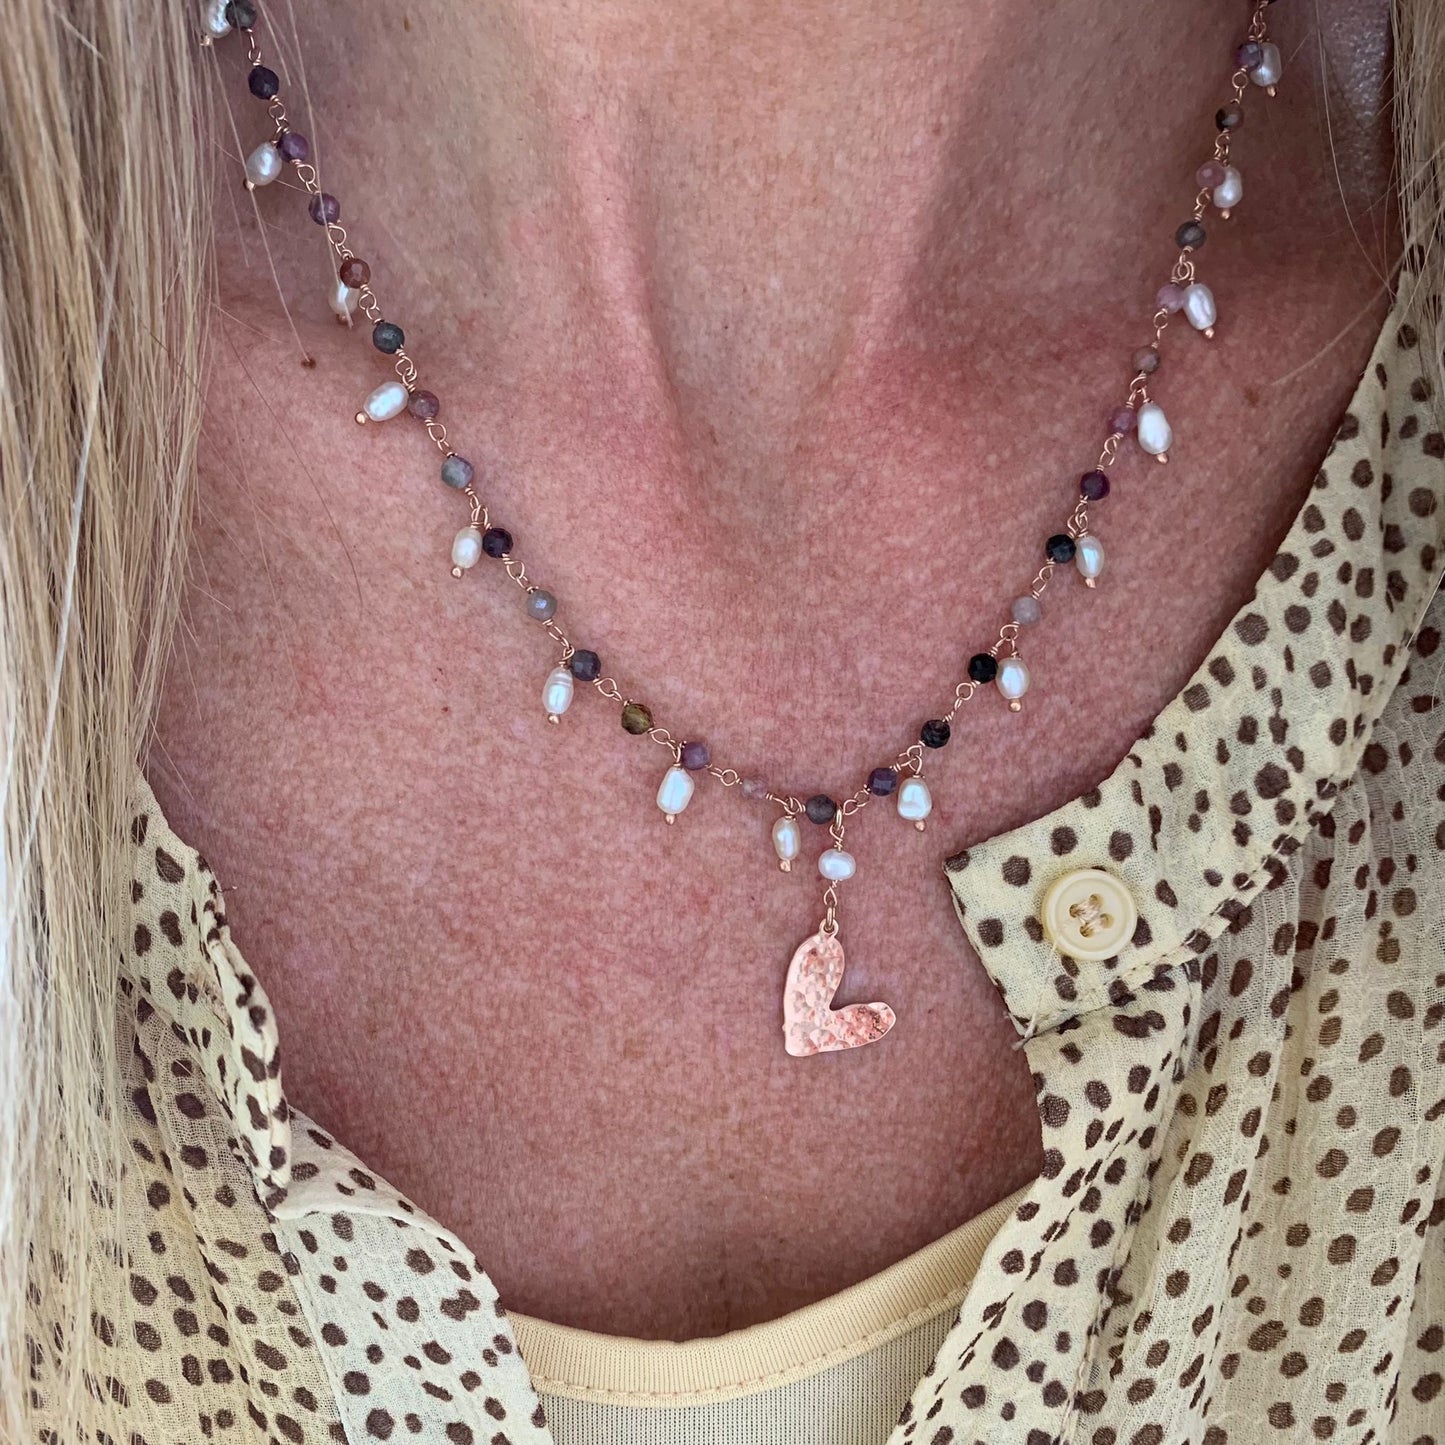 Collana pietre tormalina con grappolini di perle risino bianche cm 45 più 5 di allungamento rosè con cuore bacio battuto pendente da 1,5 cm